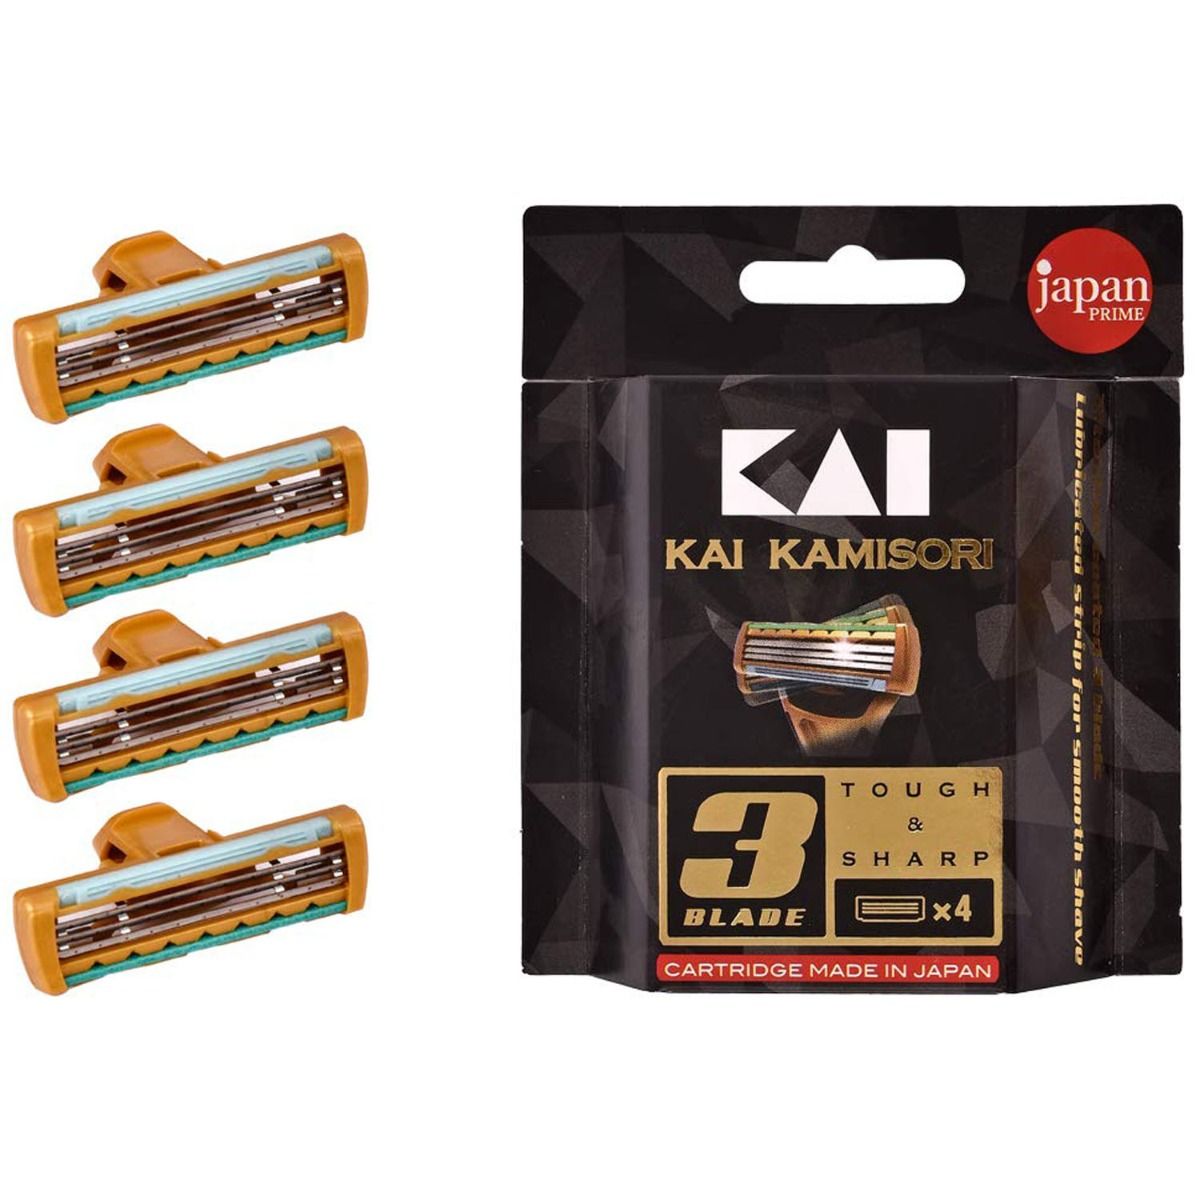 Buy Kai Kamisori Cartridge, 1 Count Online